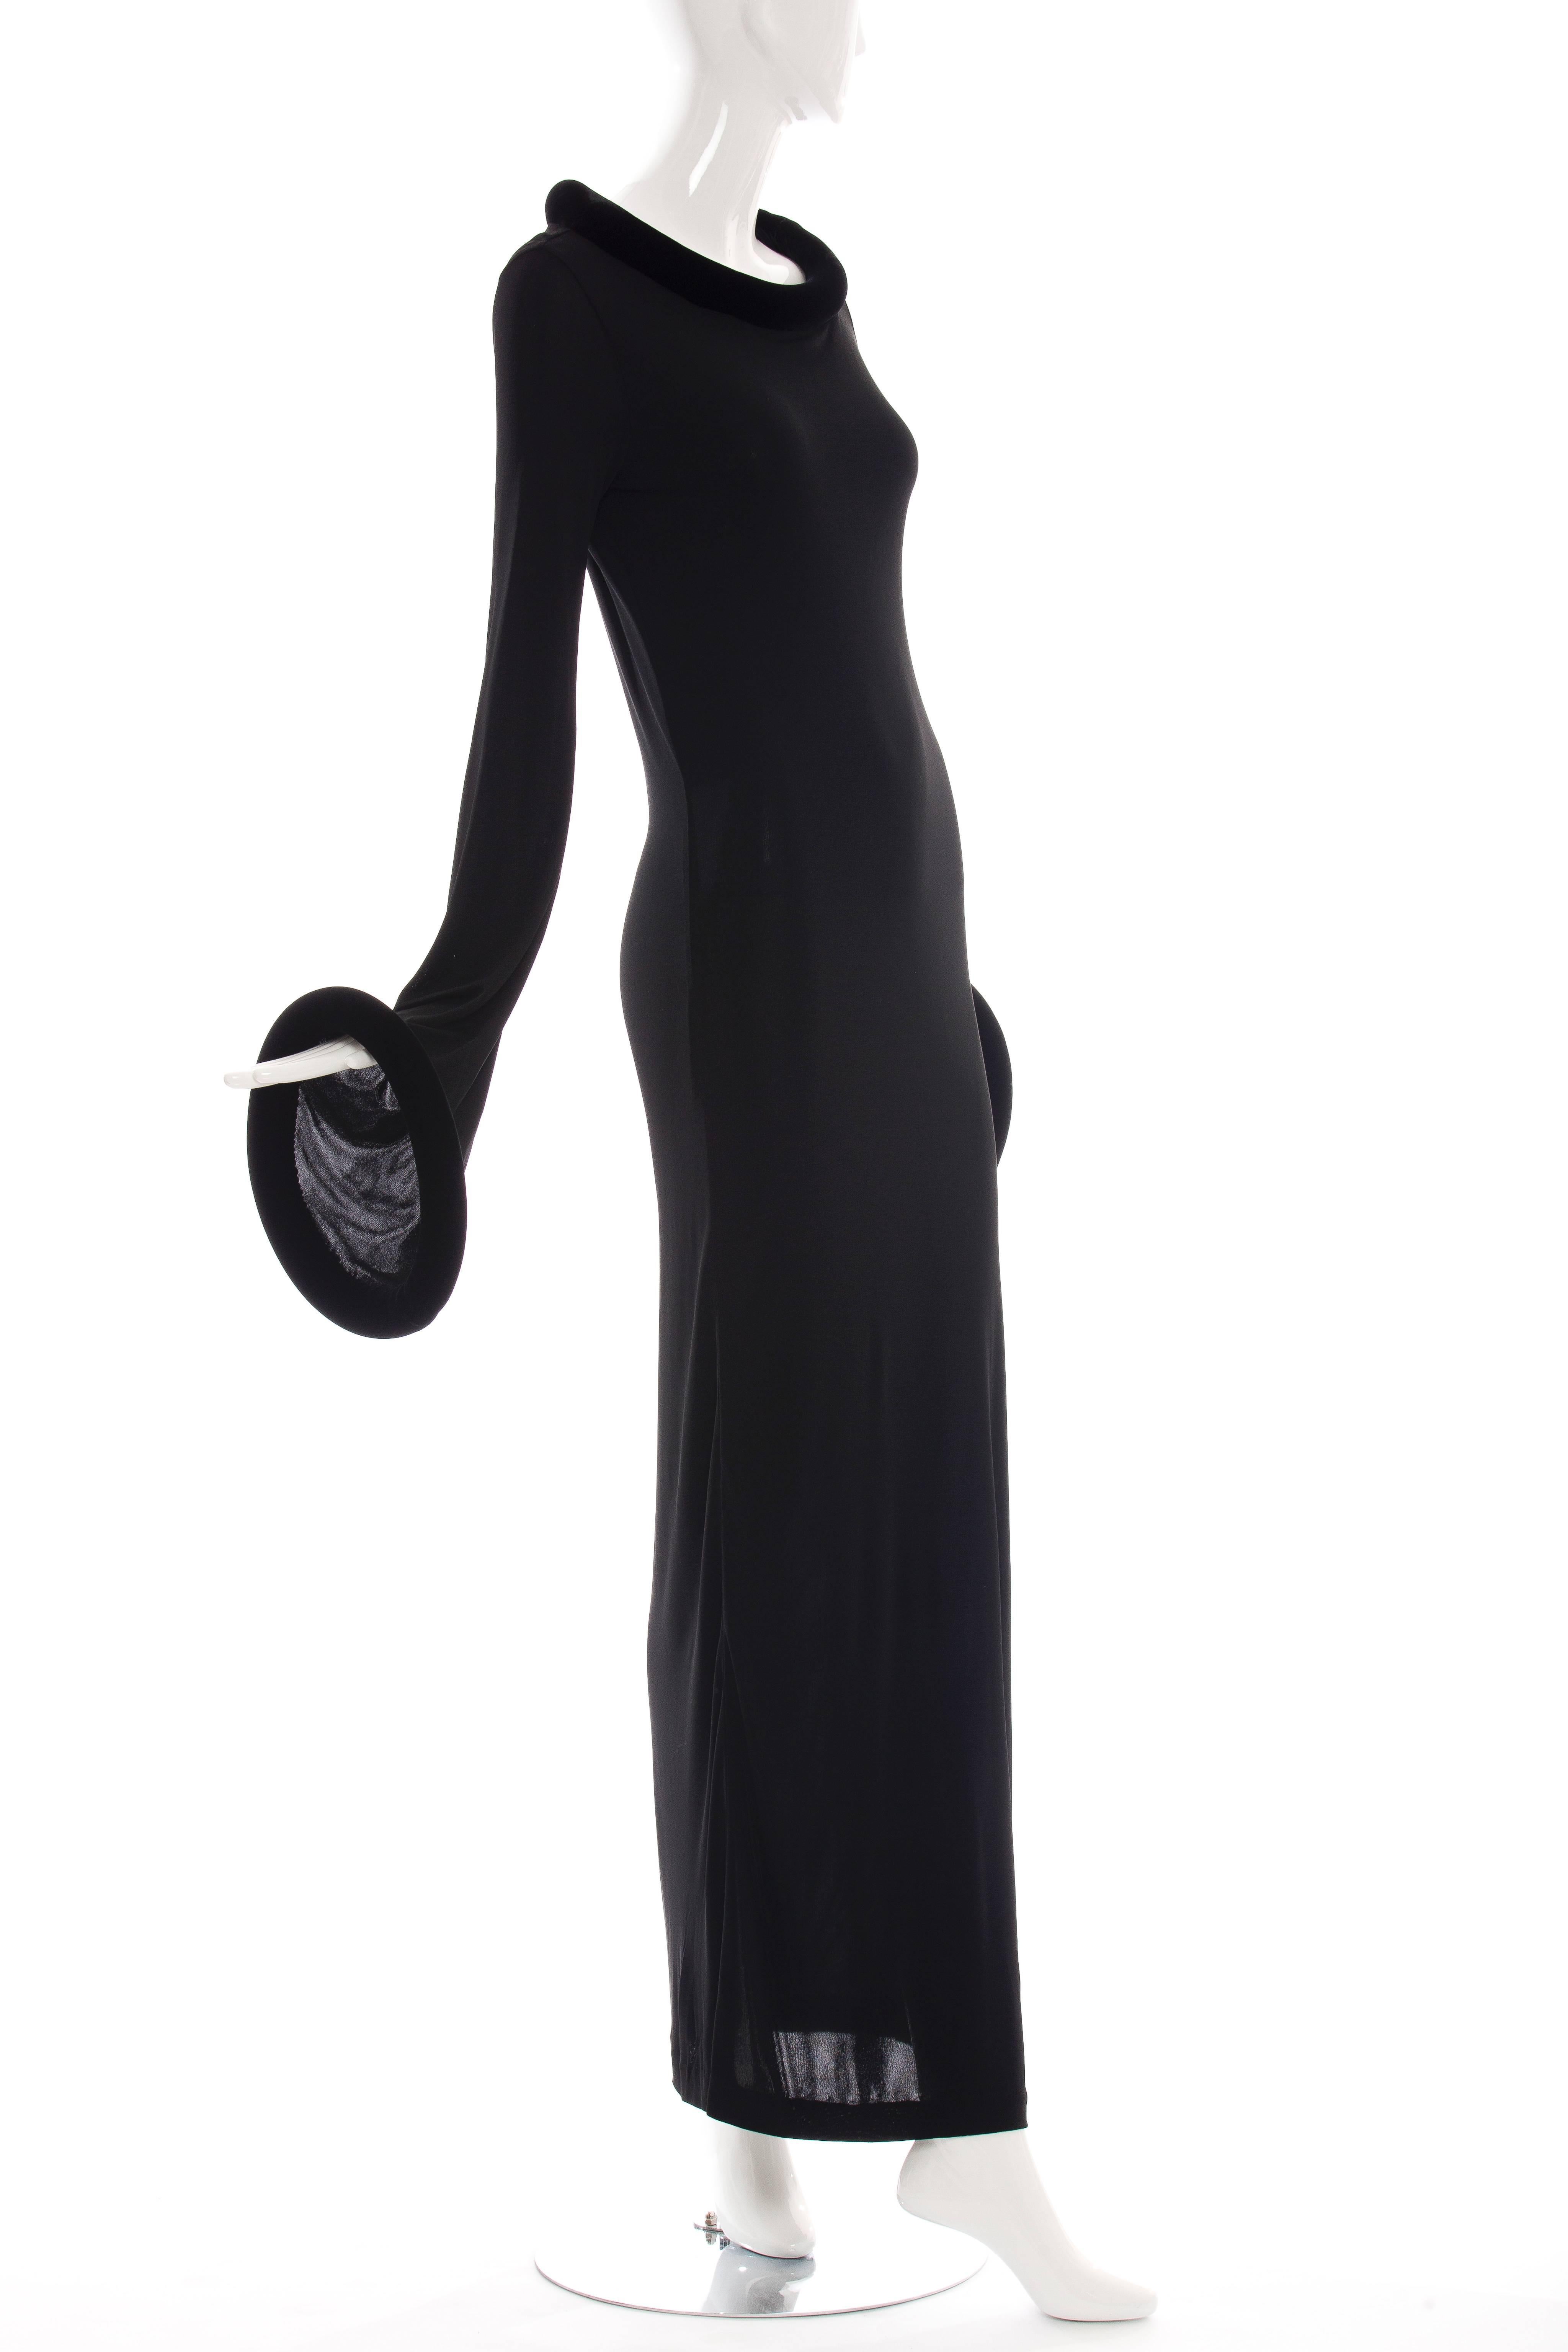 Women's Jean Paul Gaultier Black Long Evening Dress, Circa 1995